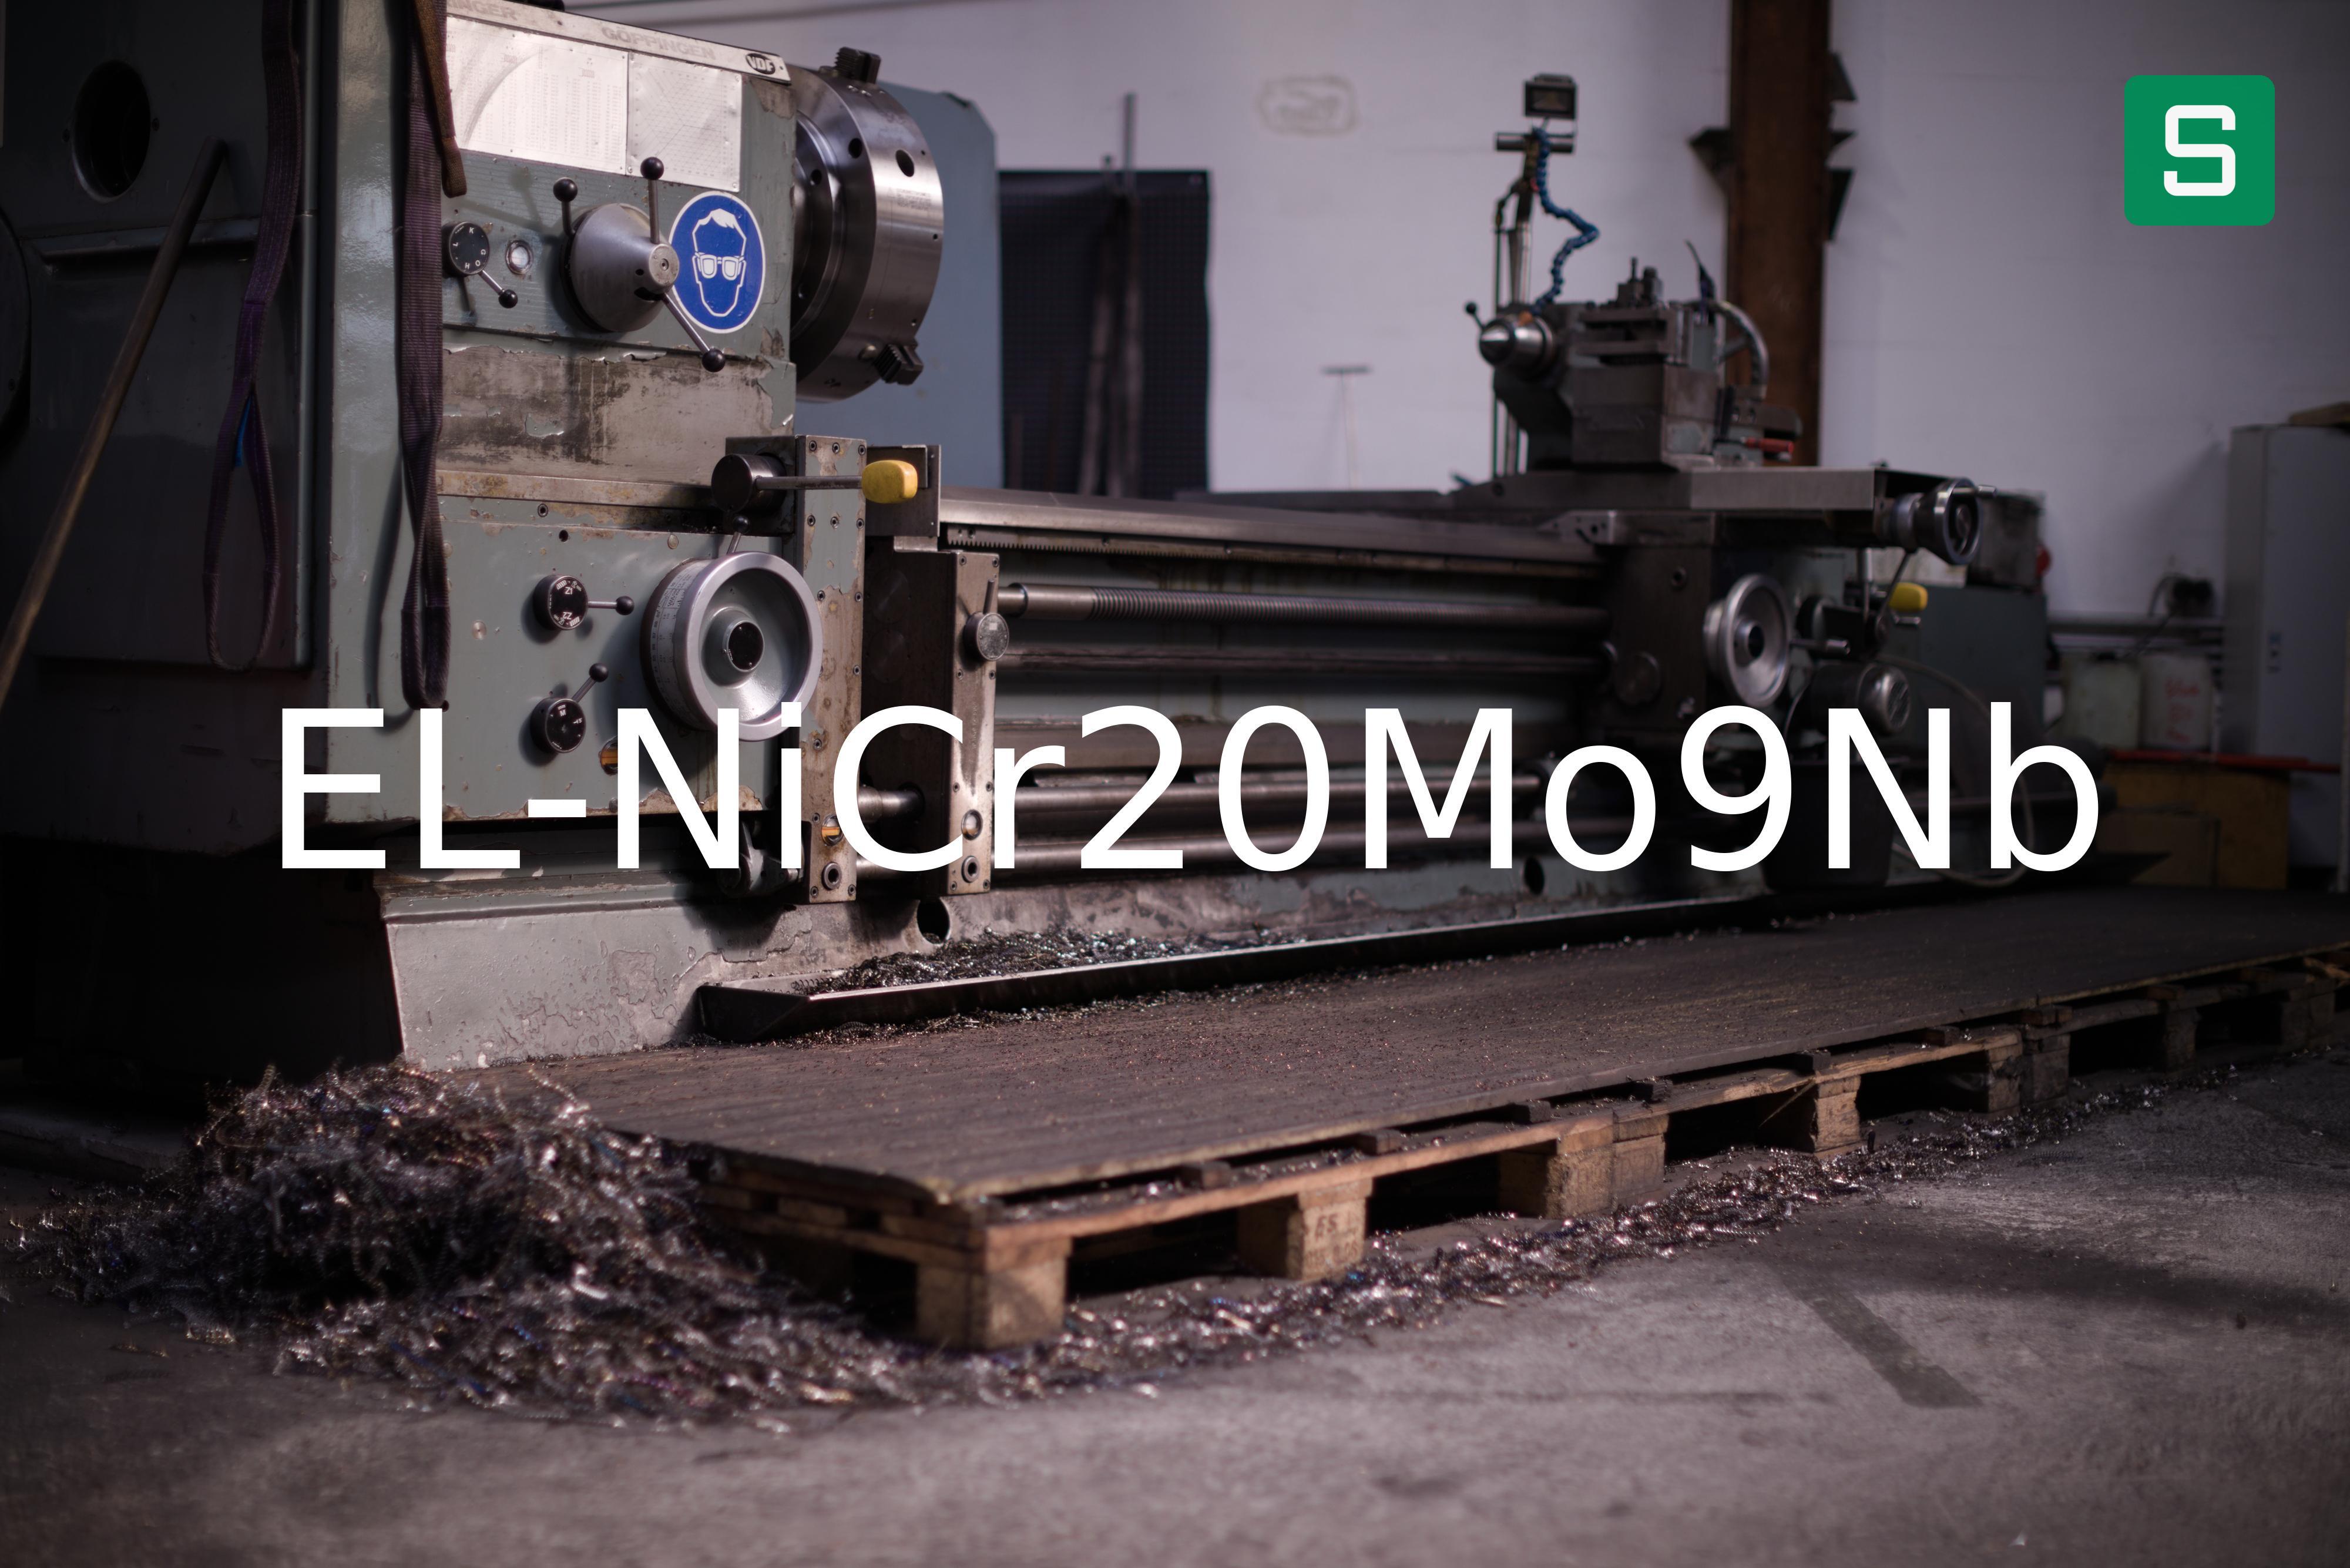 Stahlwerkstoff: EL-NiCr20Mo9Nb